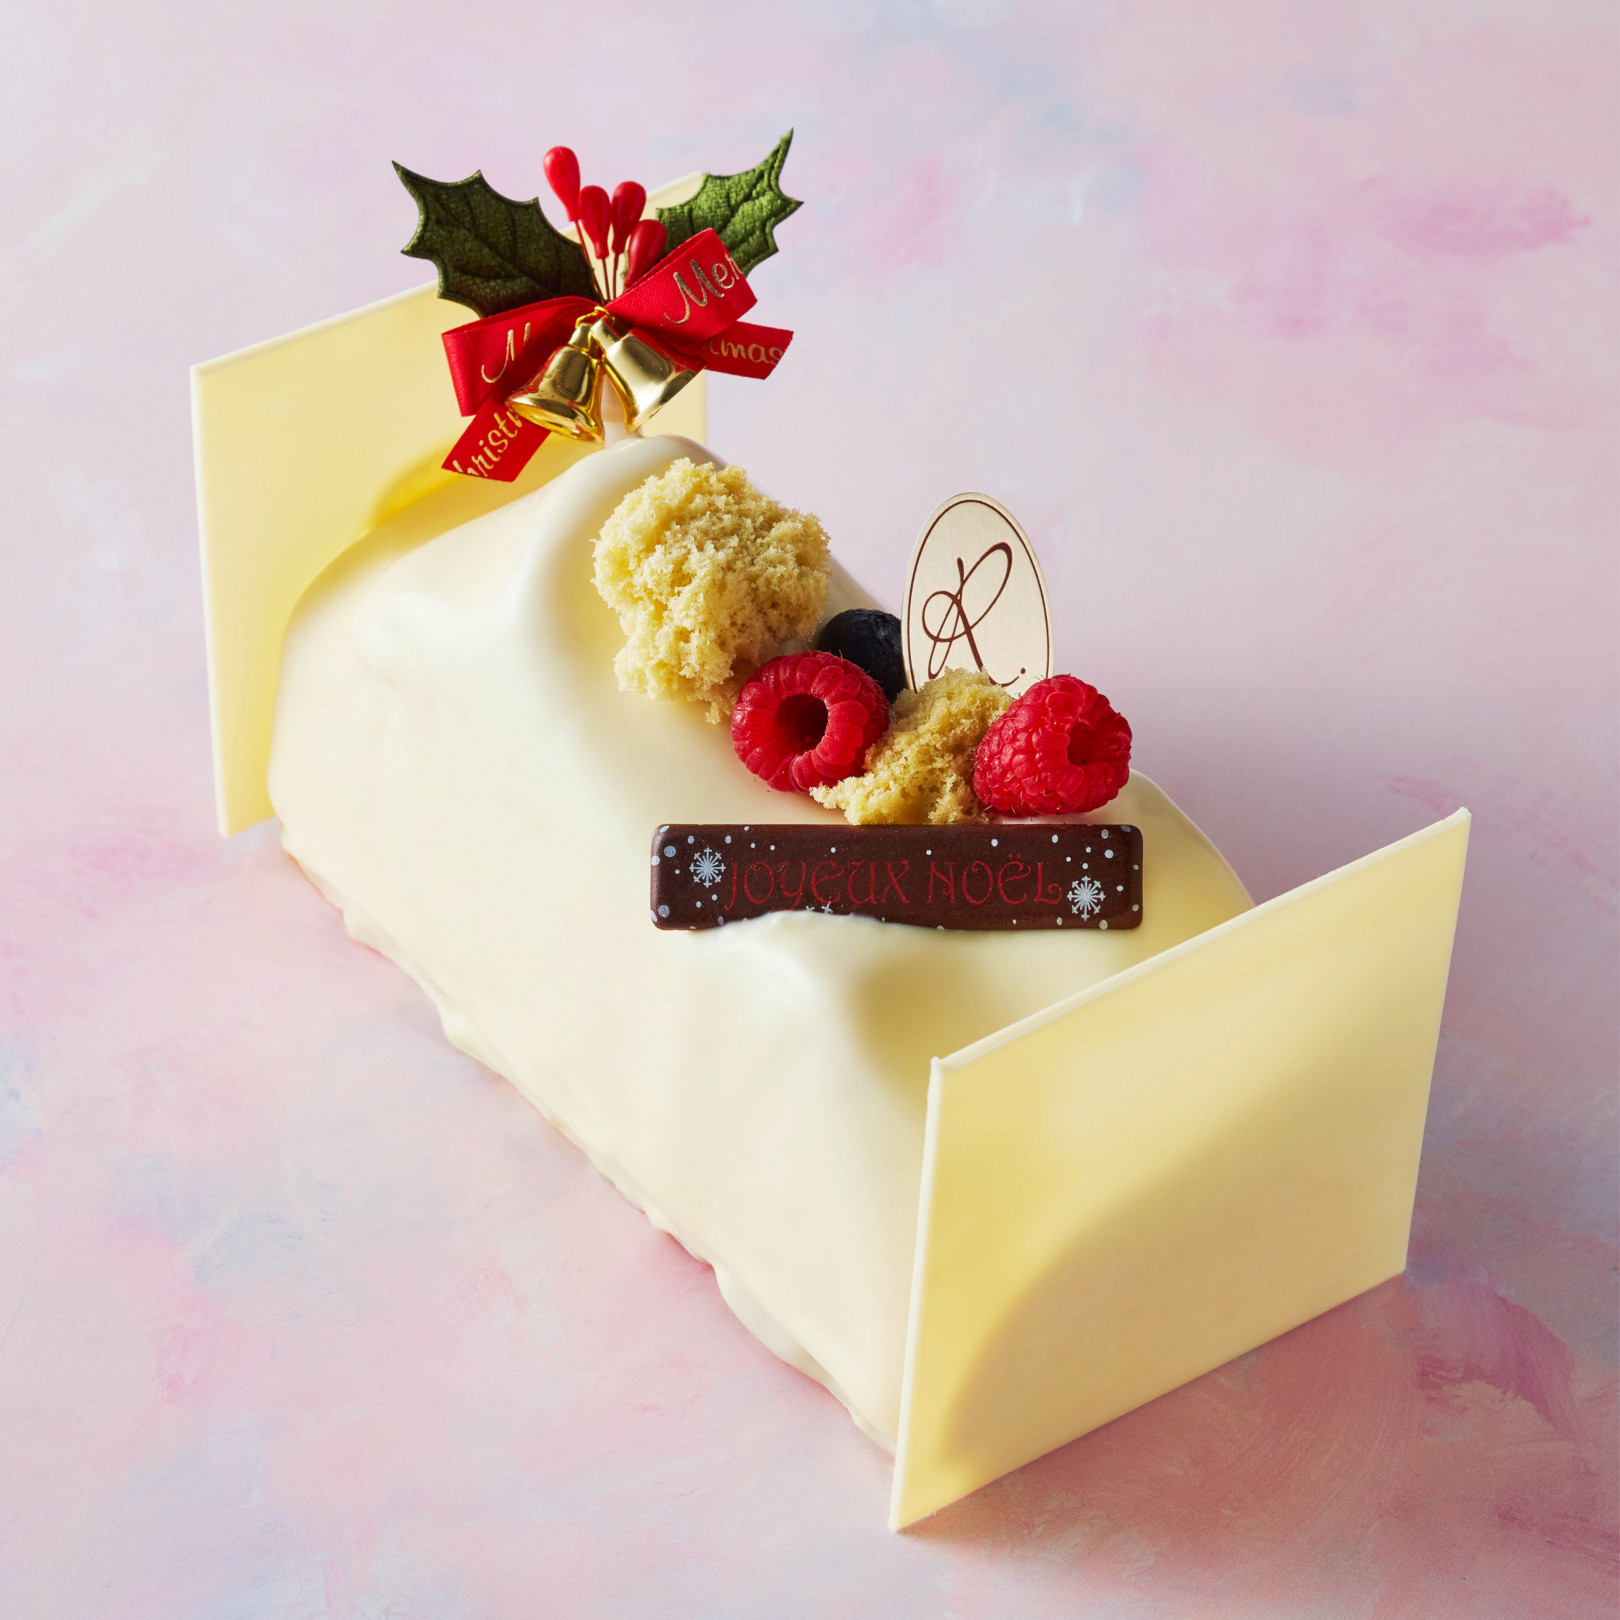 新宿伊勢丹の18年クリスマスケーキの予約がスタート 毎年話題のケーキ断面図も公開 Photo 10 19 Fashion Headline